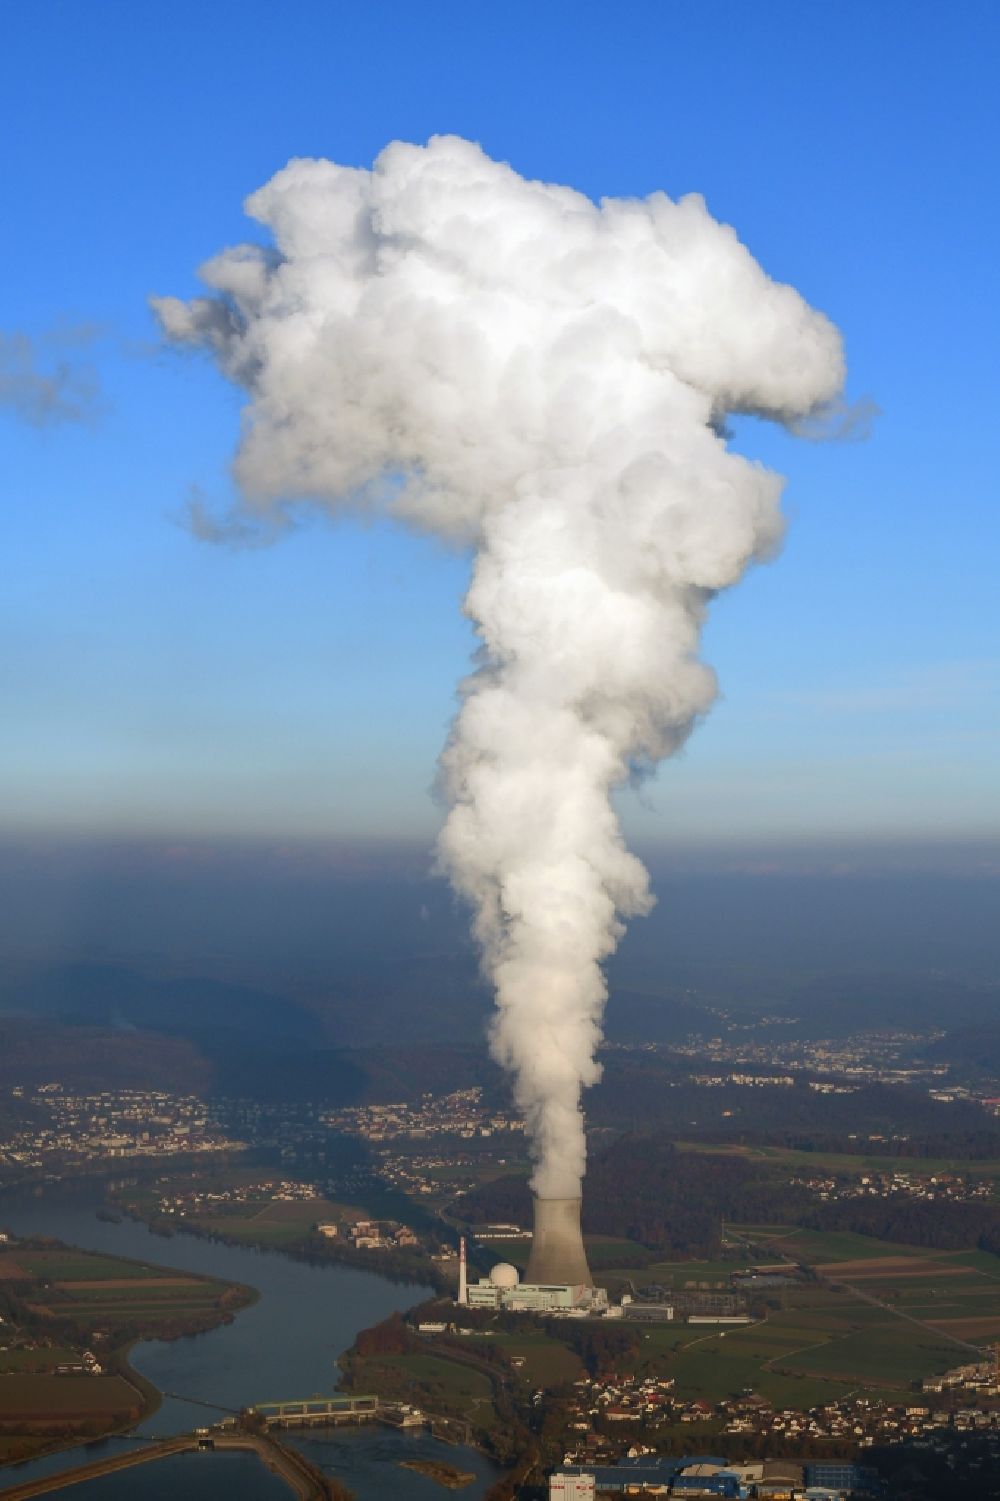 Leibstadt von oben - Dampffahne vom Reaktorblock und Kühlturm des AKW - KKW Kernkraftwerk Leibstadt KKL in der Landschaft am Hochrhein bei Leibstadt im Kanton Aargau, Schweiz